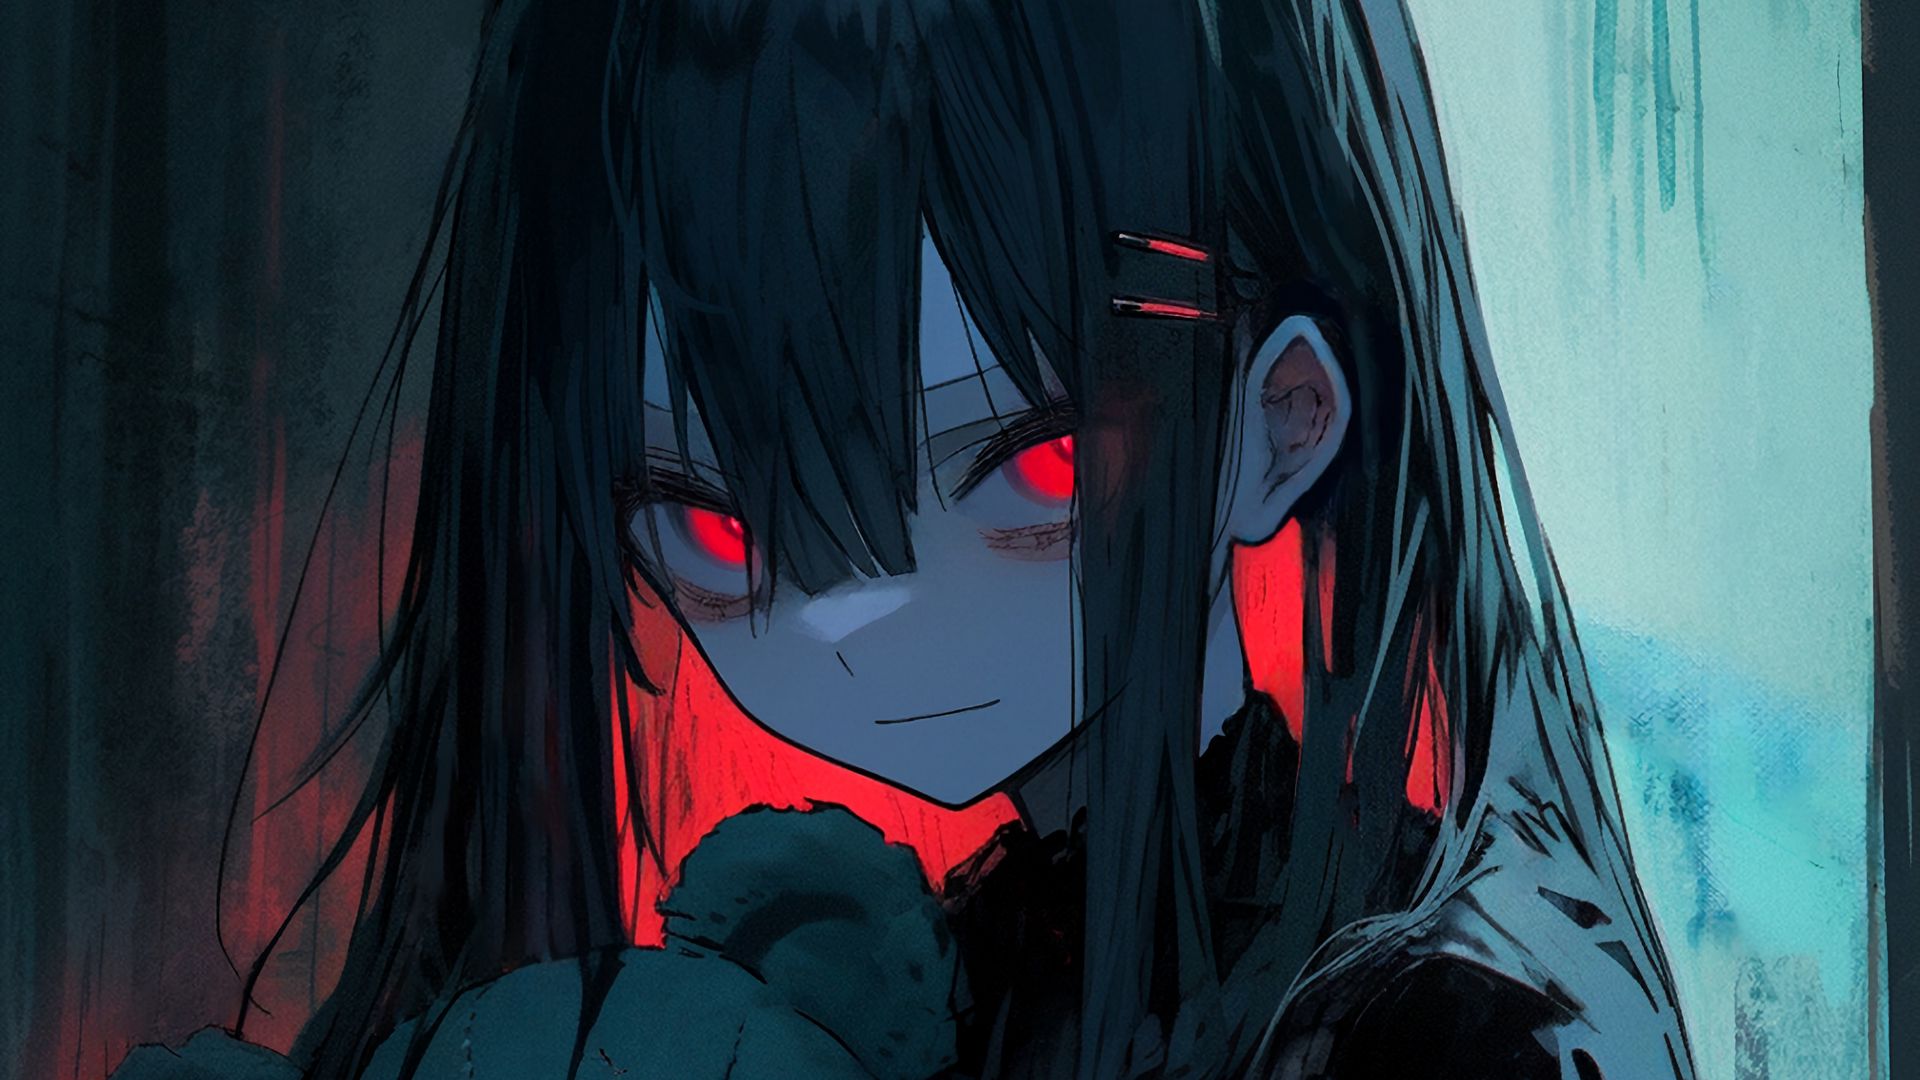 Girl - Dark Anime Wallpaper Download